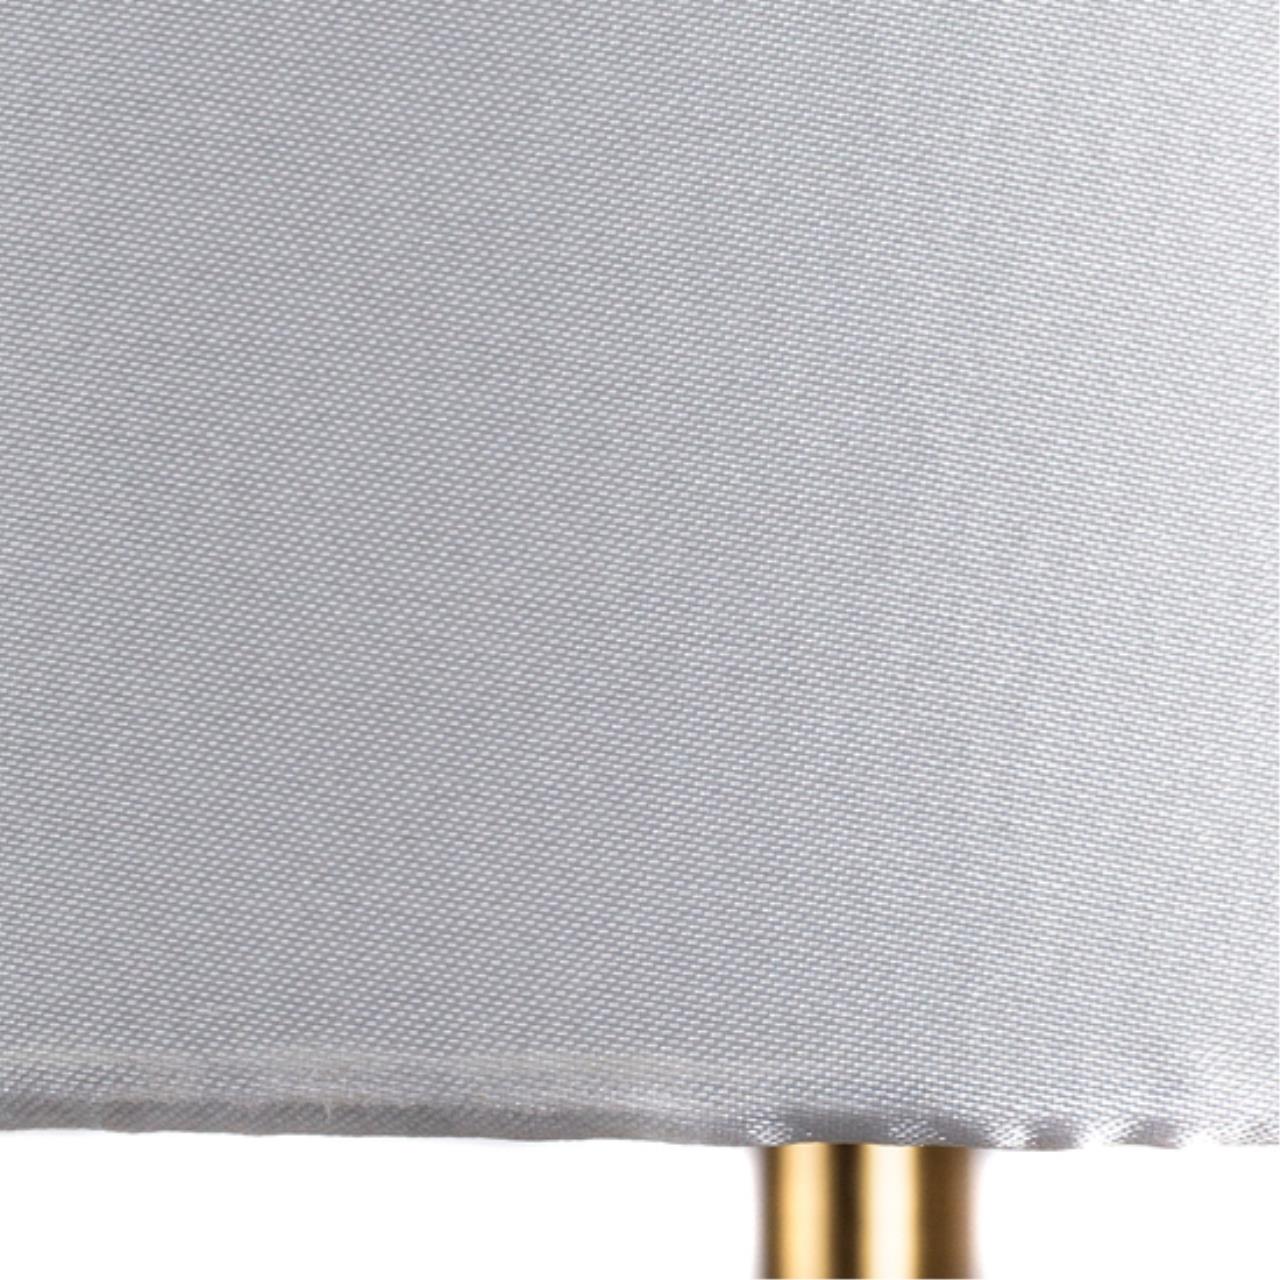 Интерьерная настольная лампа Arte lamp A4027LT-1PB